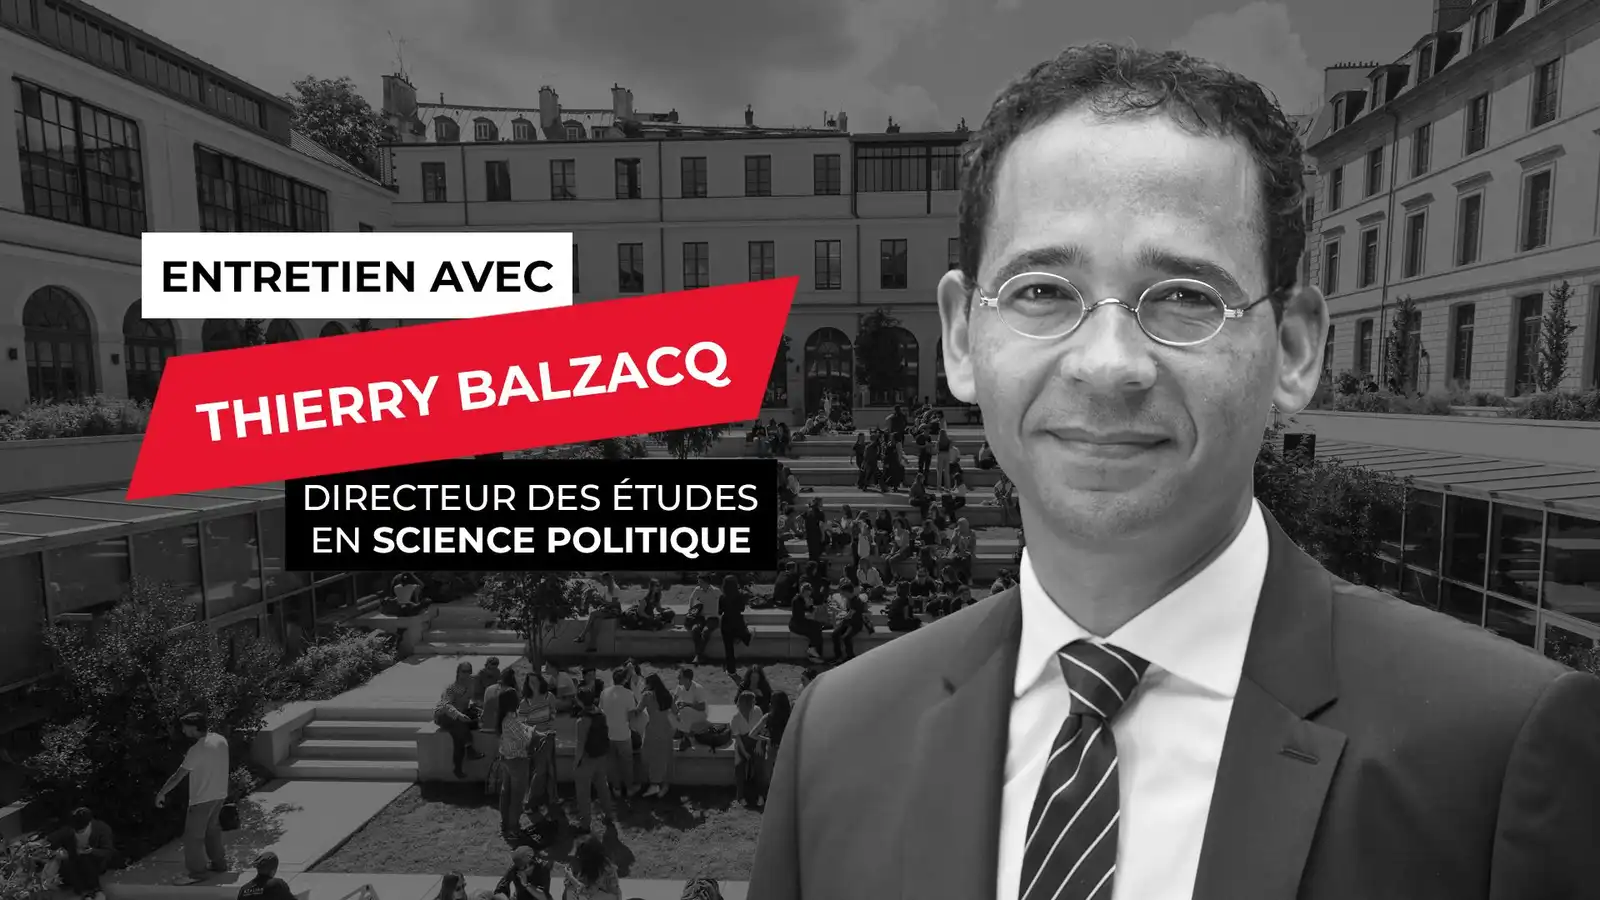 Entretien avec Thierry Balzacq, directeur des études en Science politique